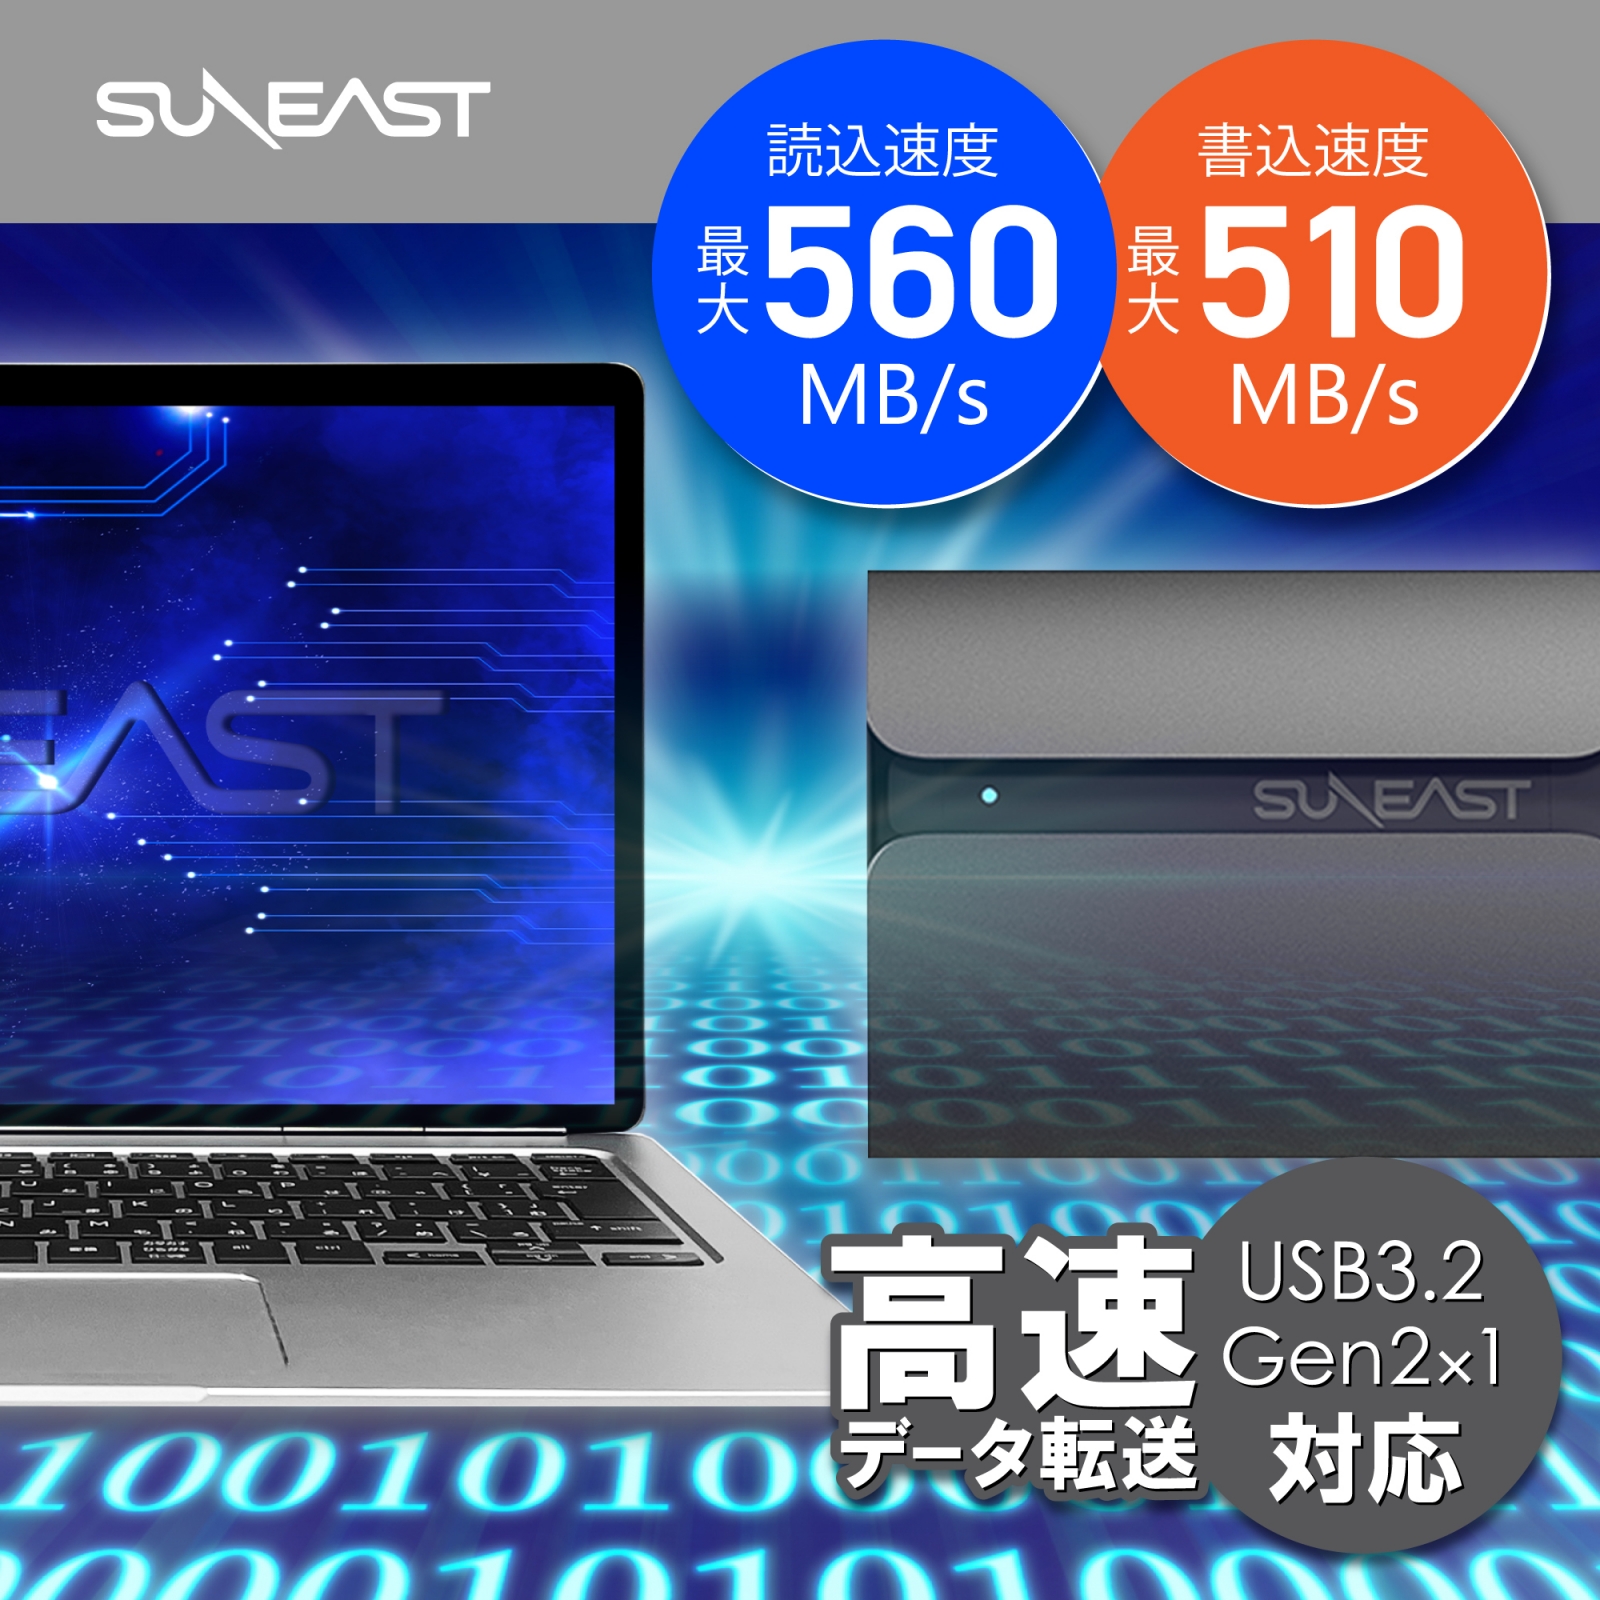 SUNEAST портативный SSD 2TB 3 год гарантия USB3.1 Type-C R:560MB/ секунд USB Type-C изменение адаптор есть .ssd установленный снаружи 2tb SE-PSSD01AC-02TB